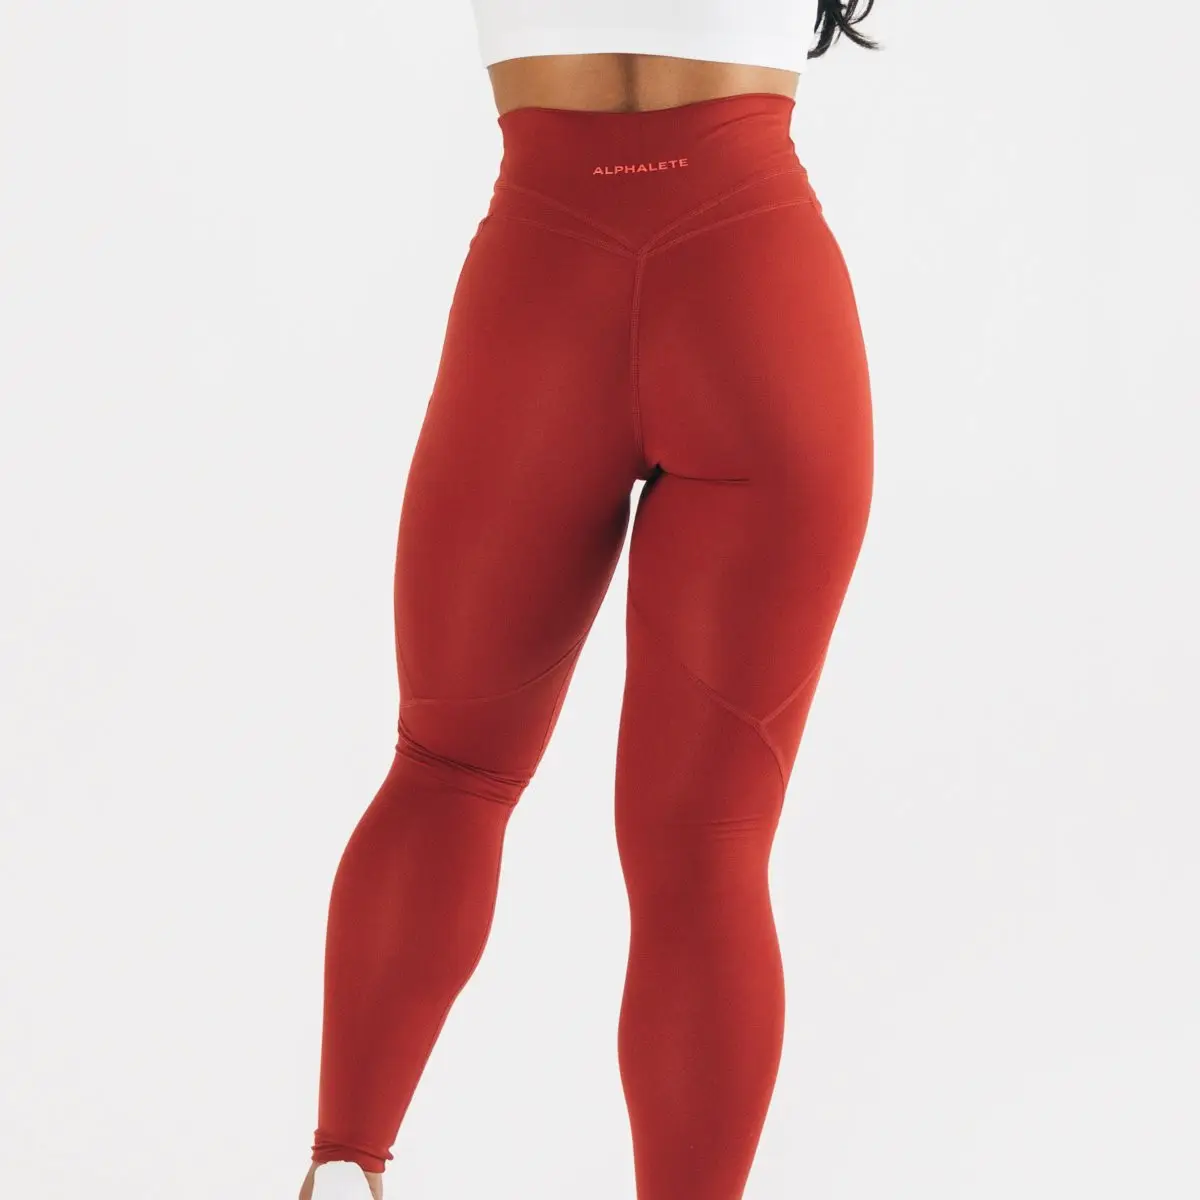 Geri dönüşümlü iplik NVGTN tedarikçisi dikişsiz Yoga spor giyim kadın NEVADA kırmızı ALPHALUX kuvvet 30 "LEGGING